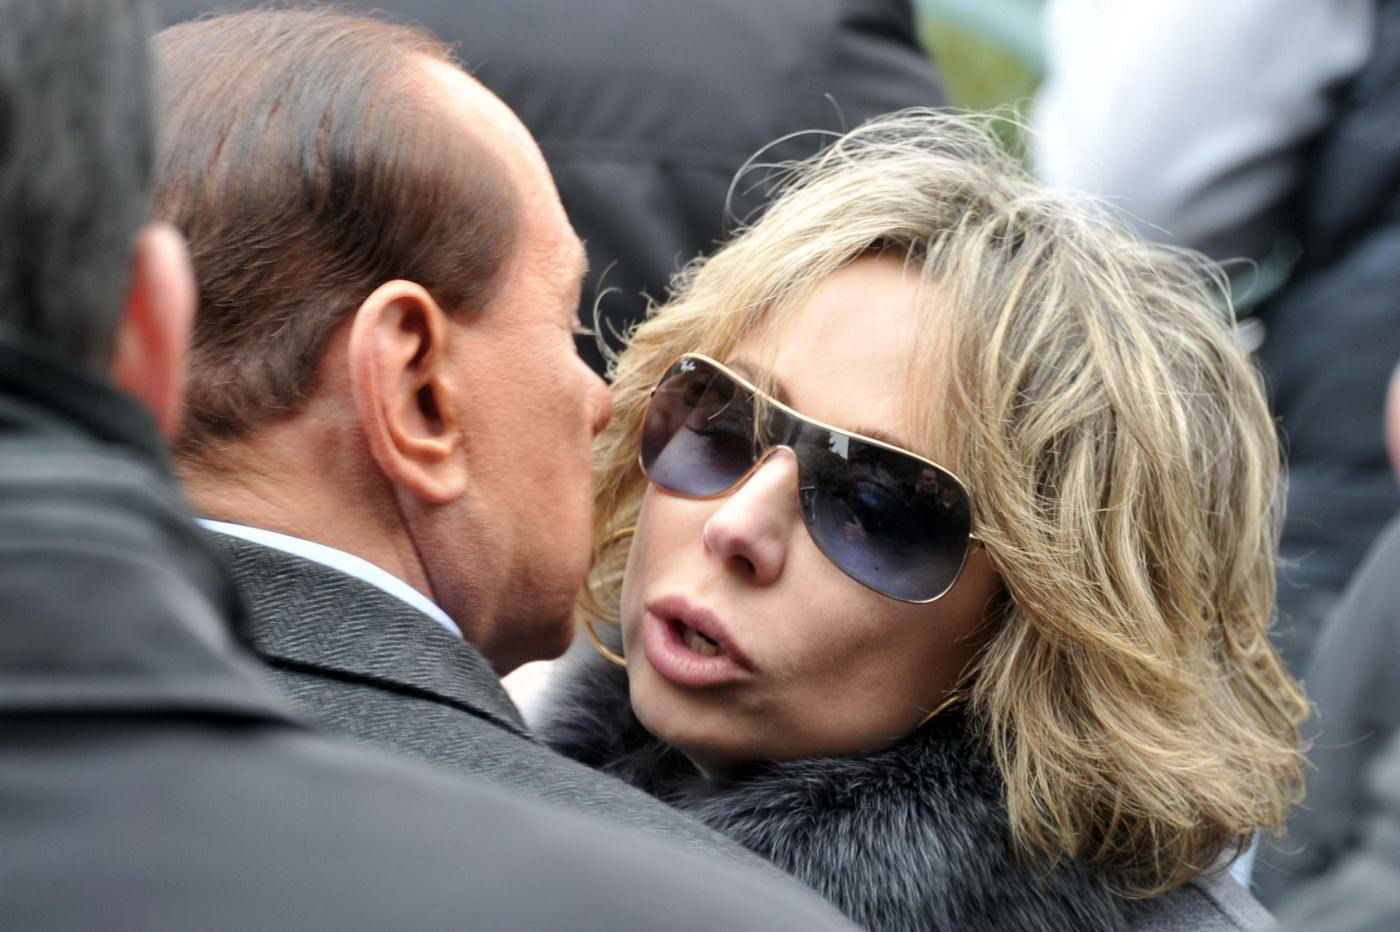 Europee. Marco Falcone: “Marina Berlusconi sia capolista per la Circoscrizione Sicilia-Sardegna